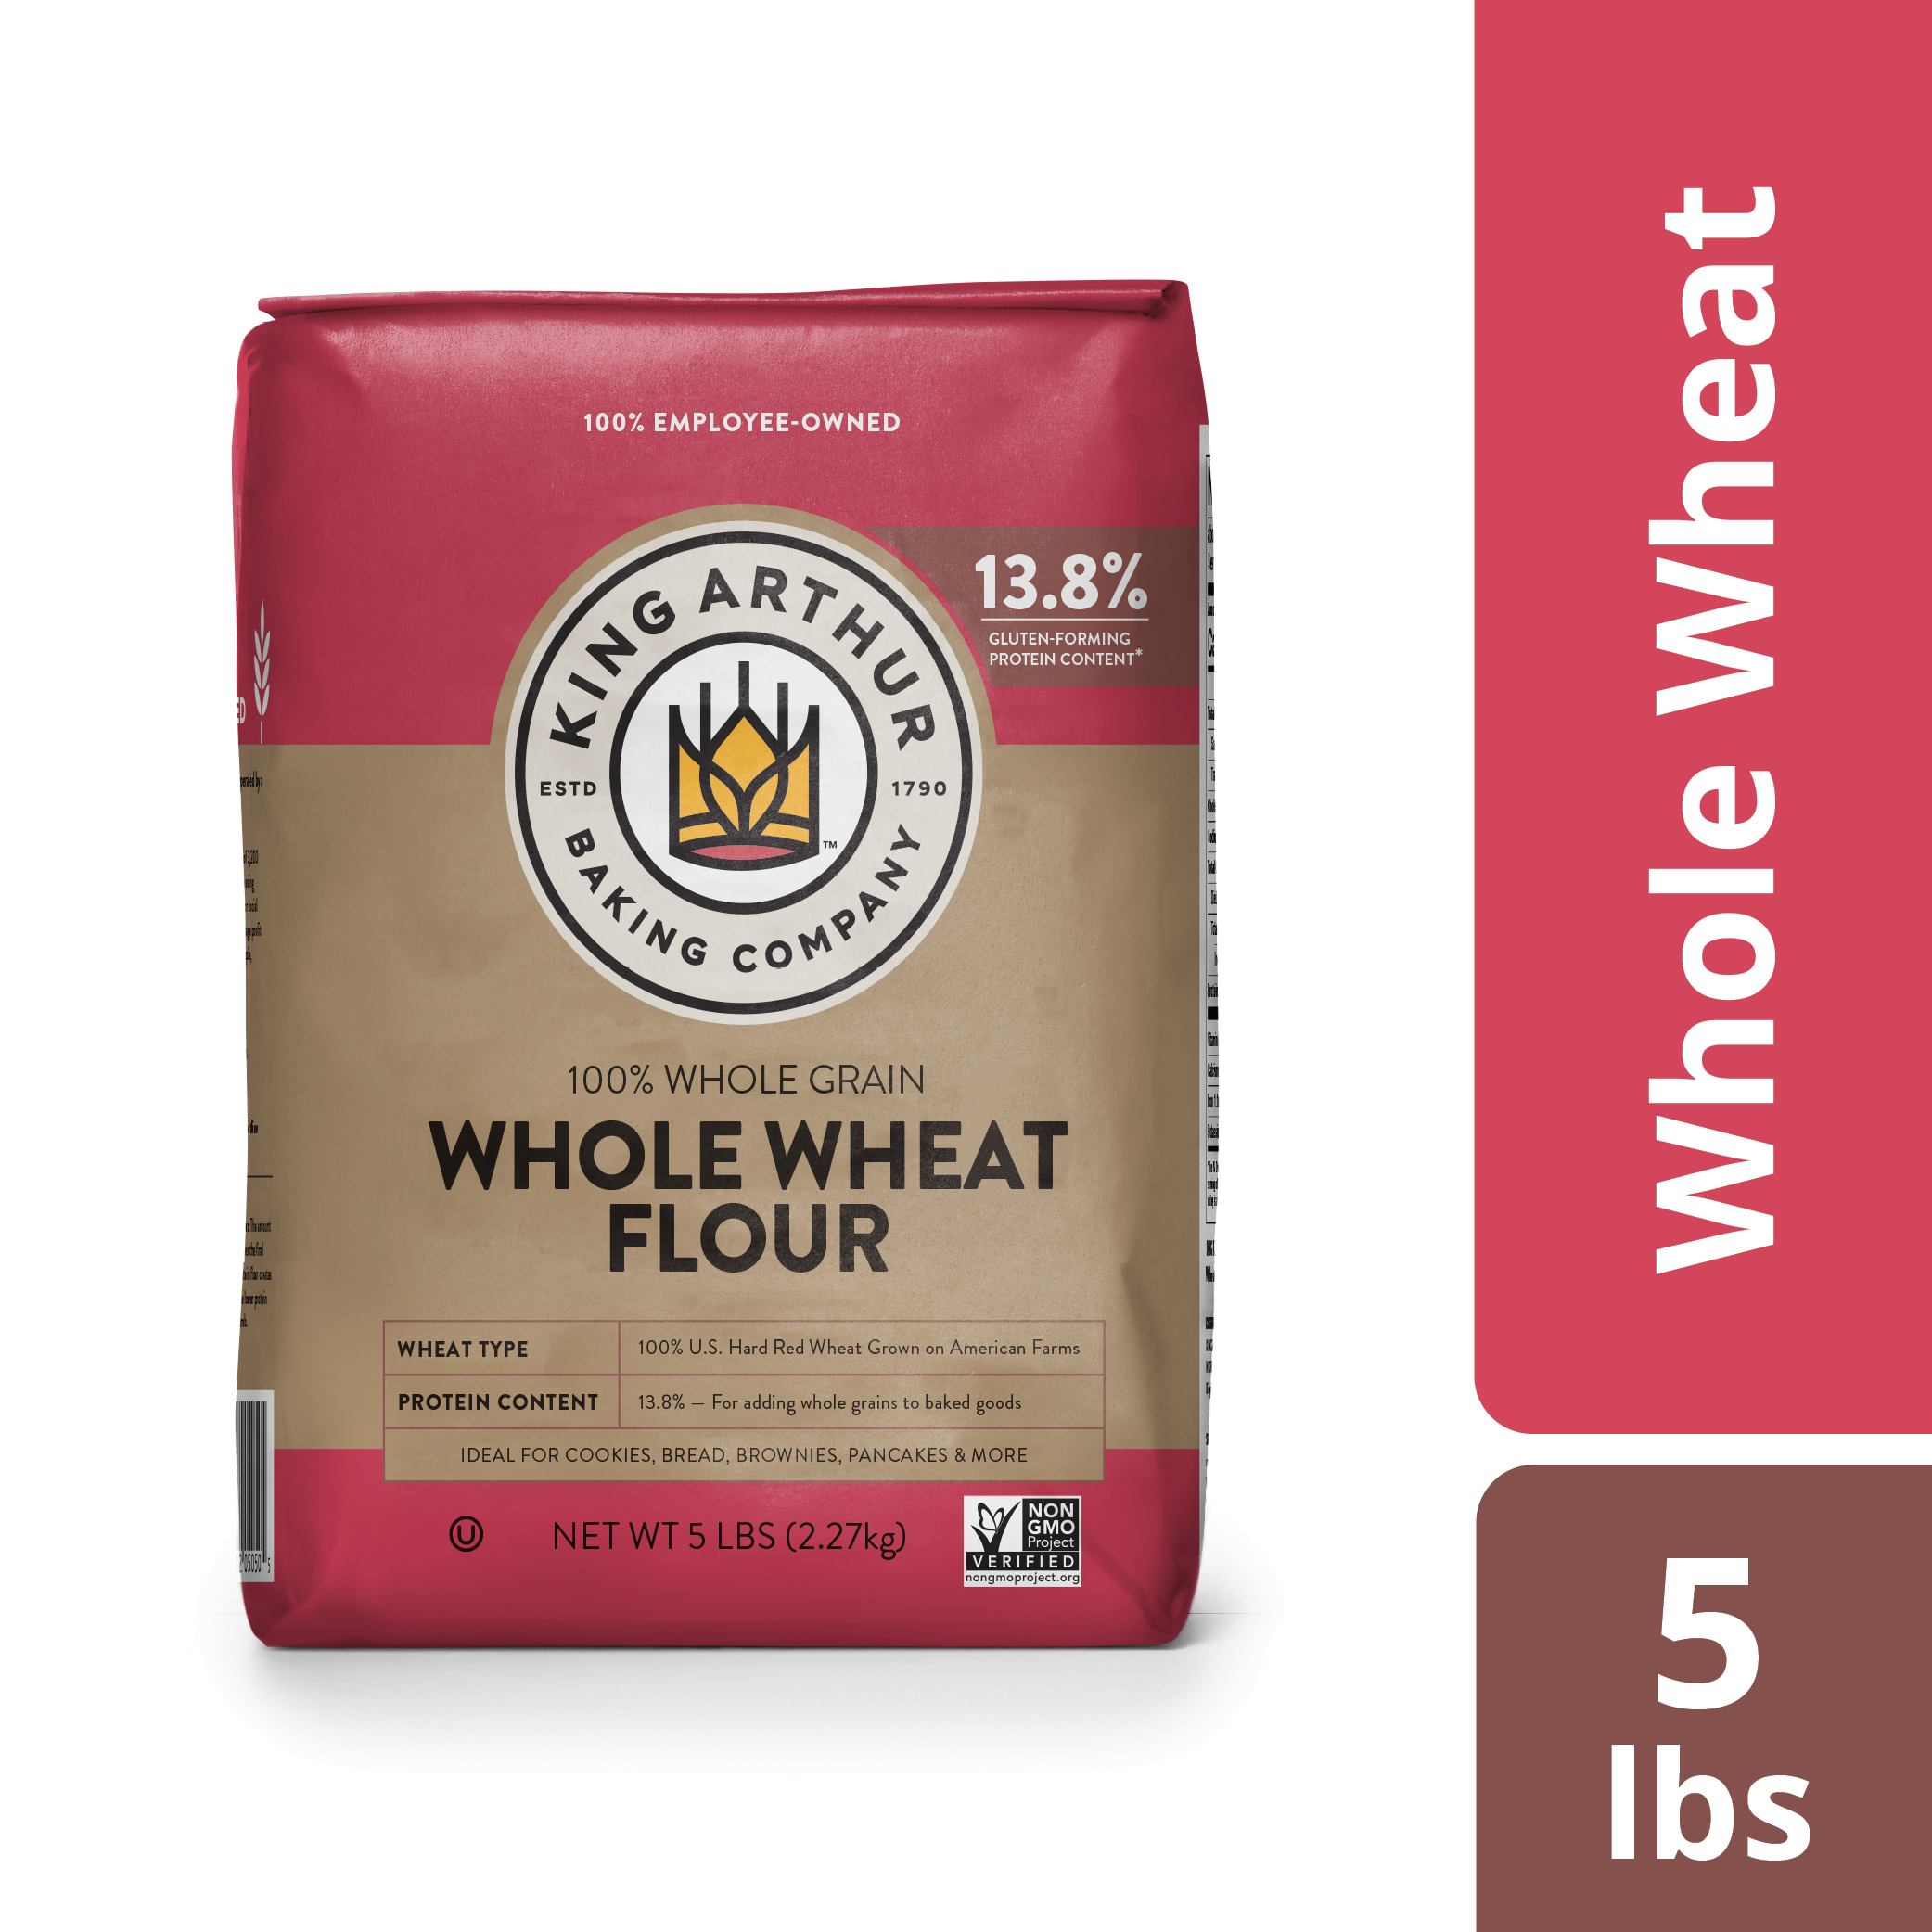 King Arthur Flour 100% Premium Whole Wheat Flour, 80 oz - image 2 of 5